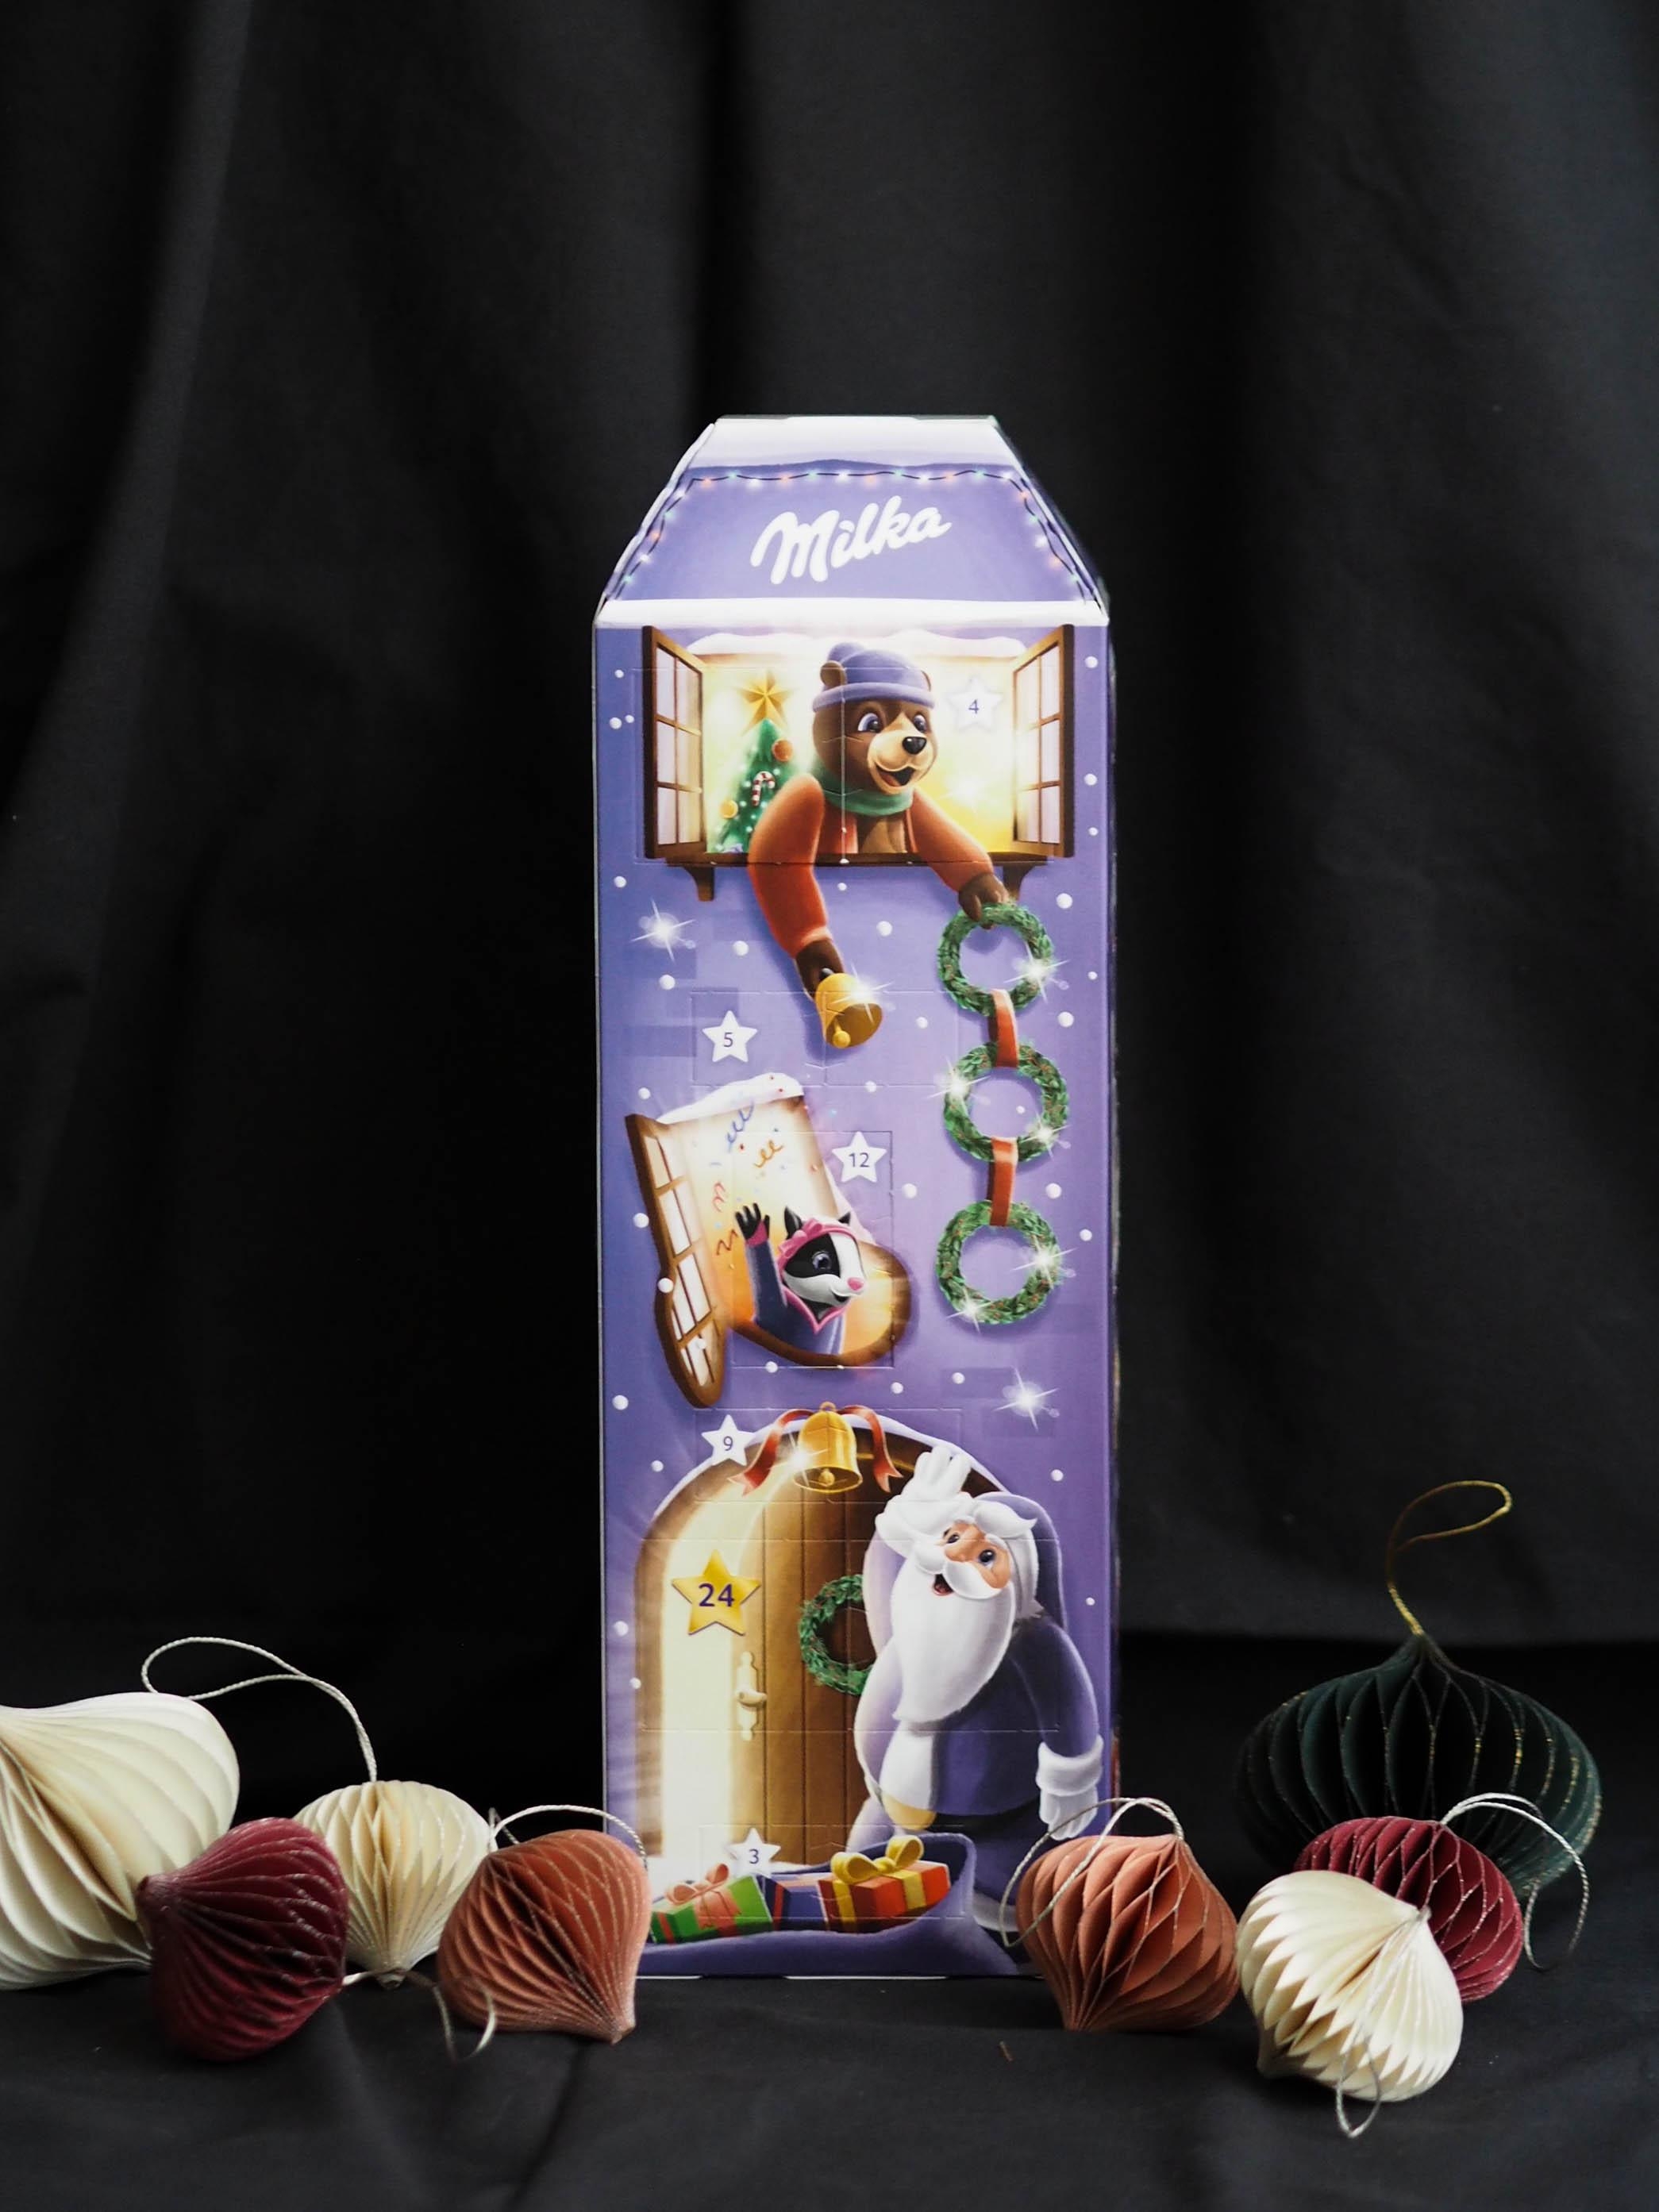 24 süße Überraschungen erwarten uns hinter den Türen des Milka Adventskalender
#foodadventskalender
